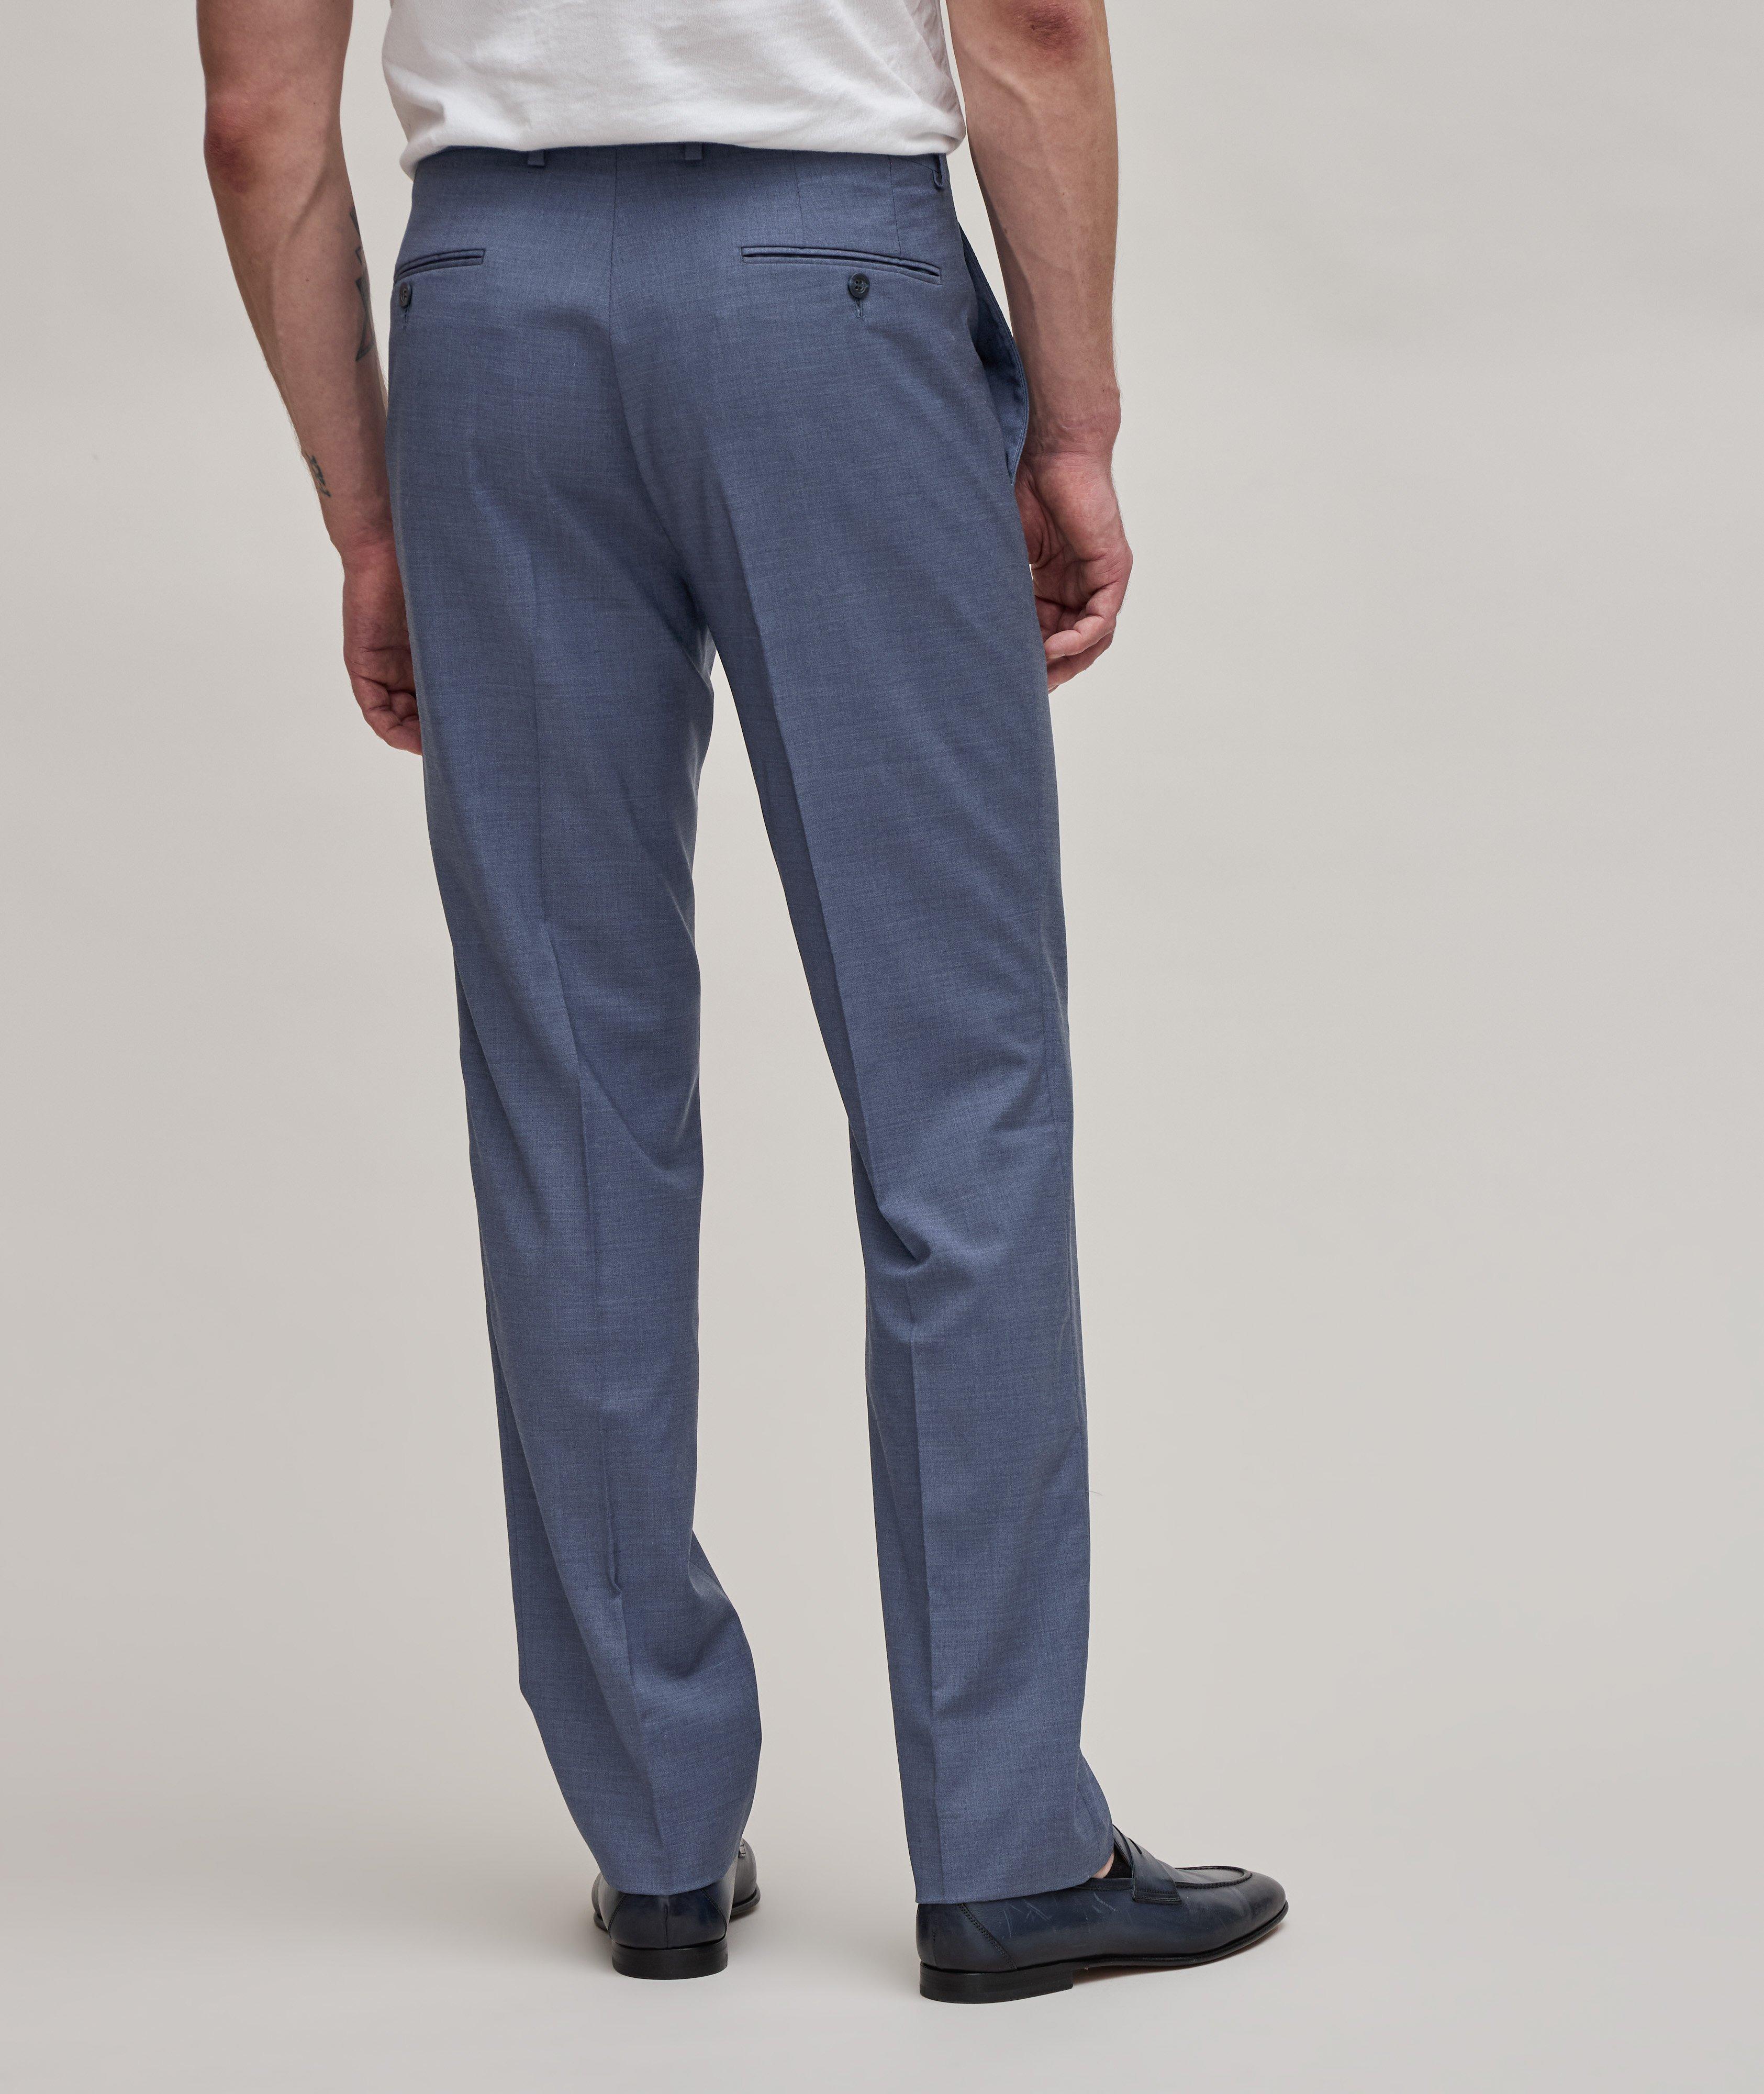 Pantalon habillé en laine Super 110, collection tropicale image 4